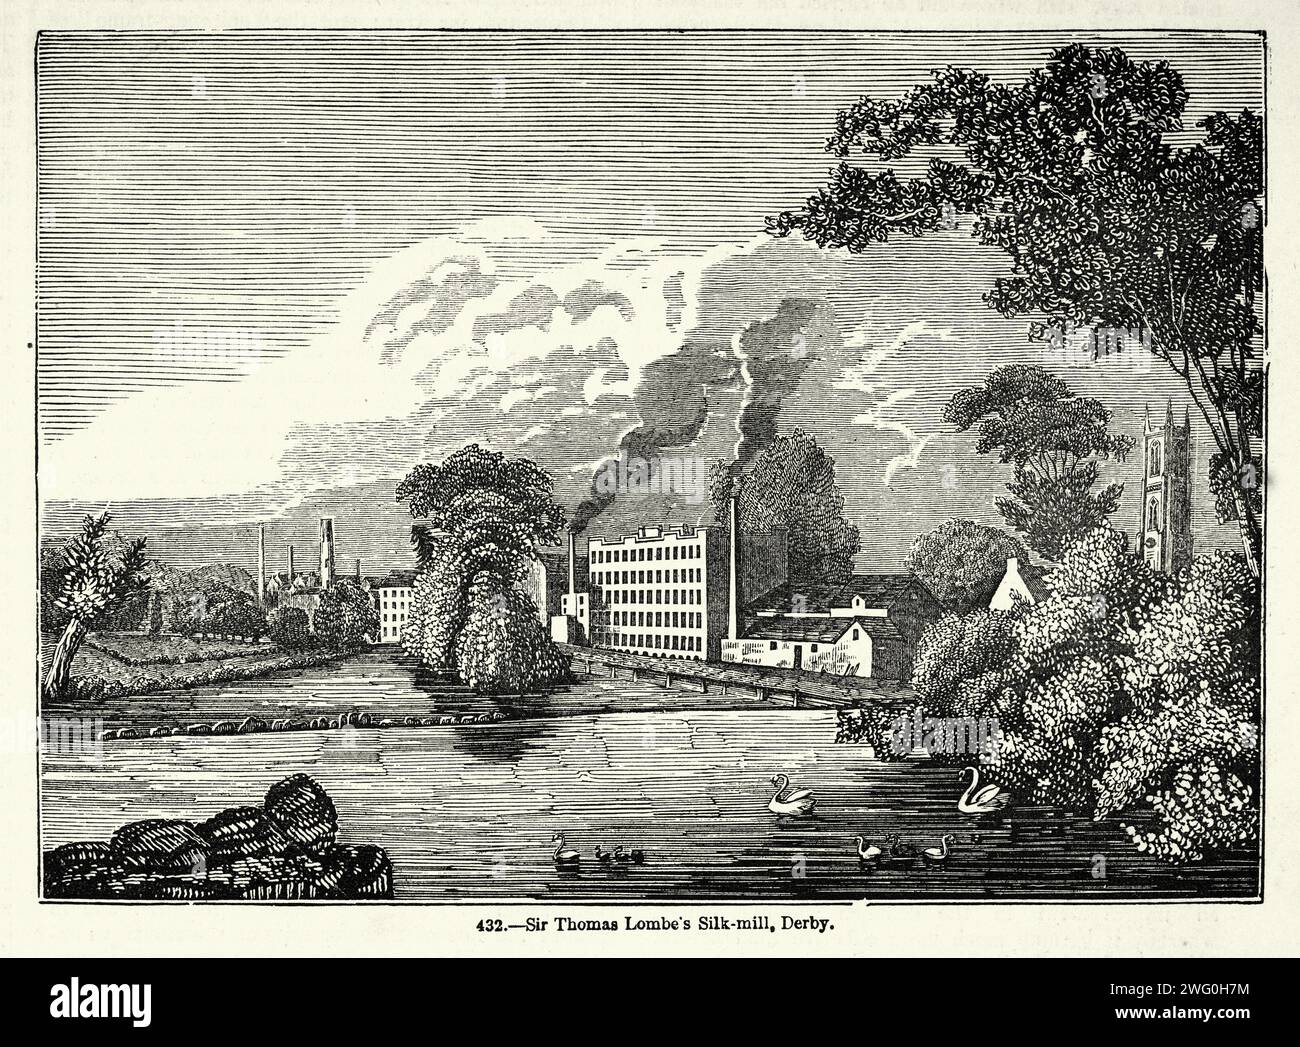 Illustration vintage, l'usine de soie de Sir Thomas Lombe à Derby, Histoire de l'industrie textile, révolution industrielle, 19e siècle victorien, années 1850 Banque D'Images